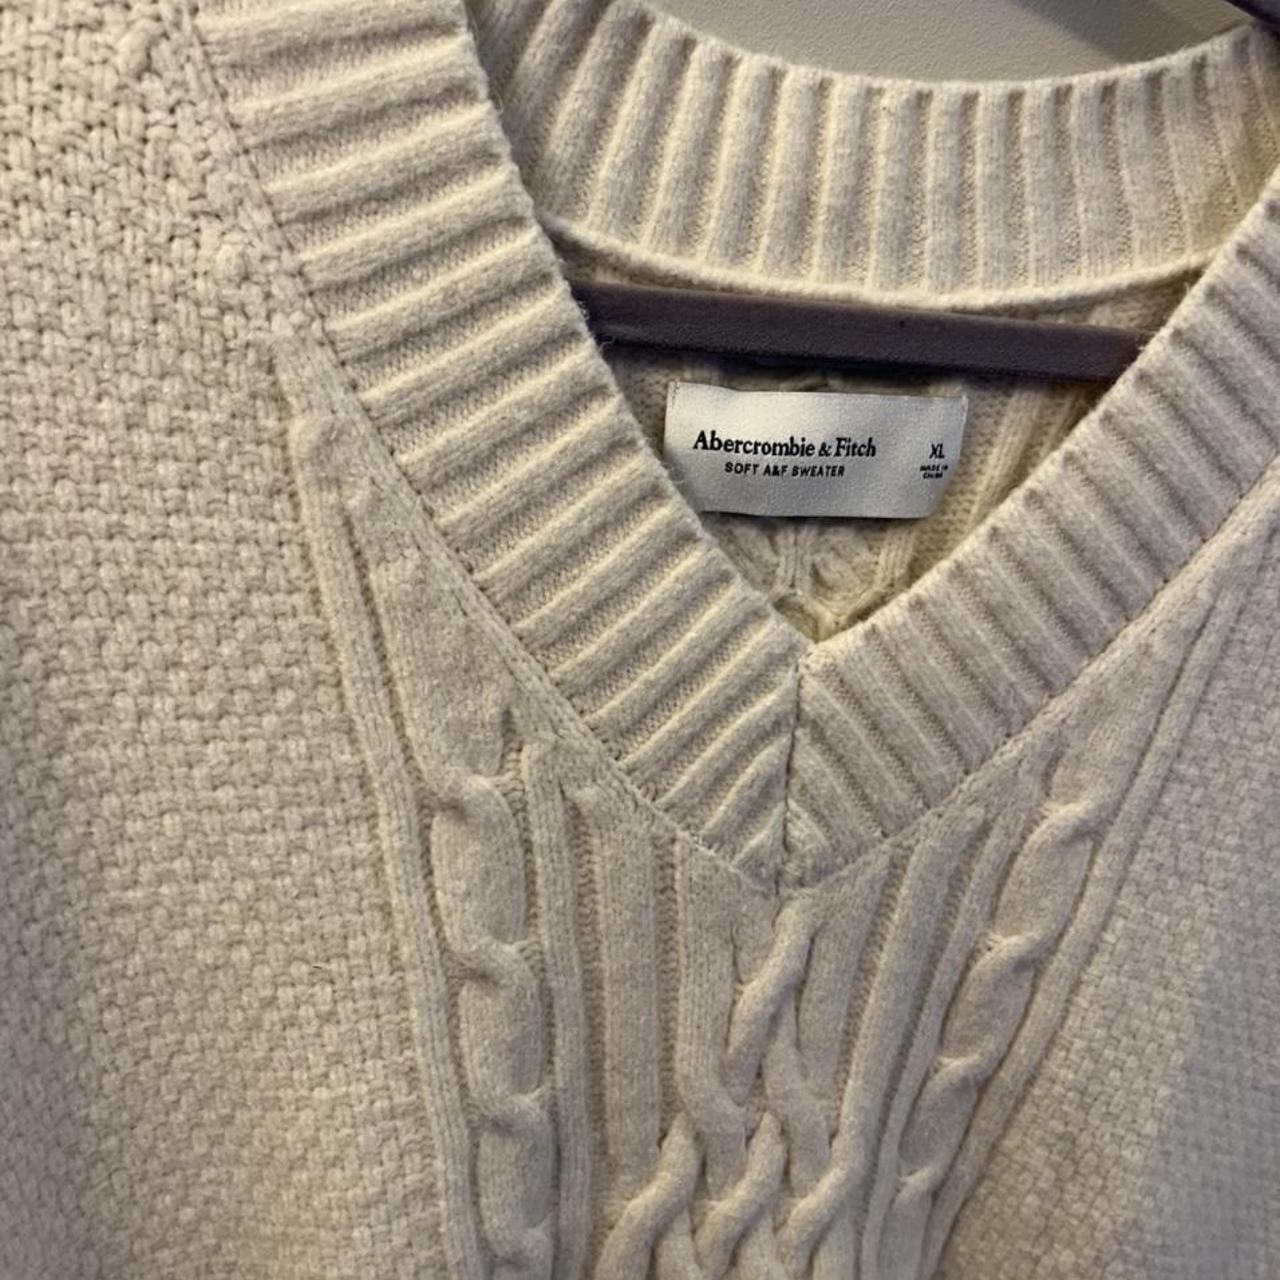 Abercrombie & Fitch men’s sweater vest (size XL).... - Depop